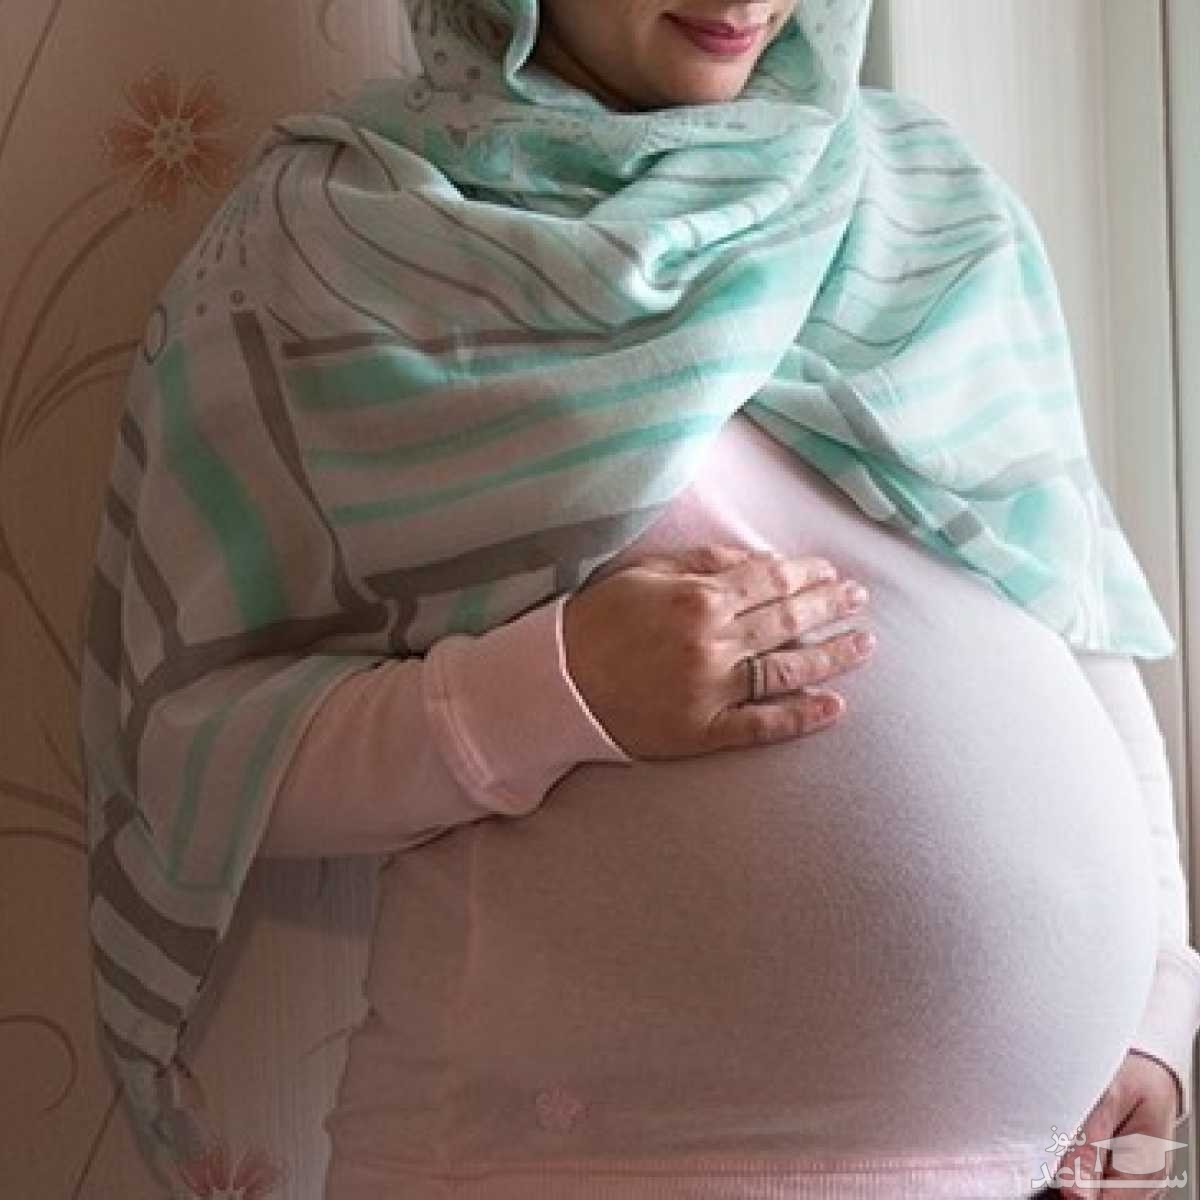 بیماری های عفونی خطرناک در زنان باردار